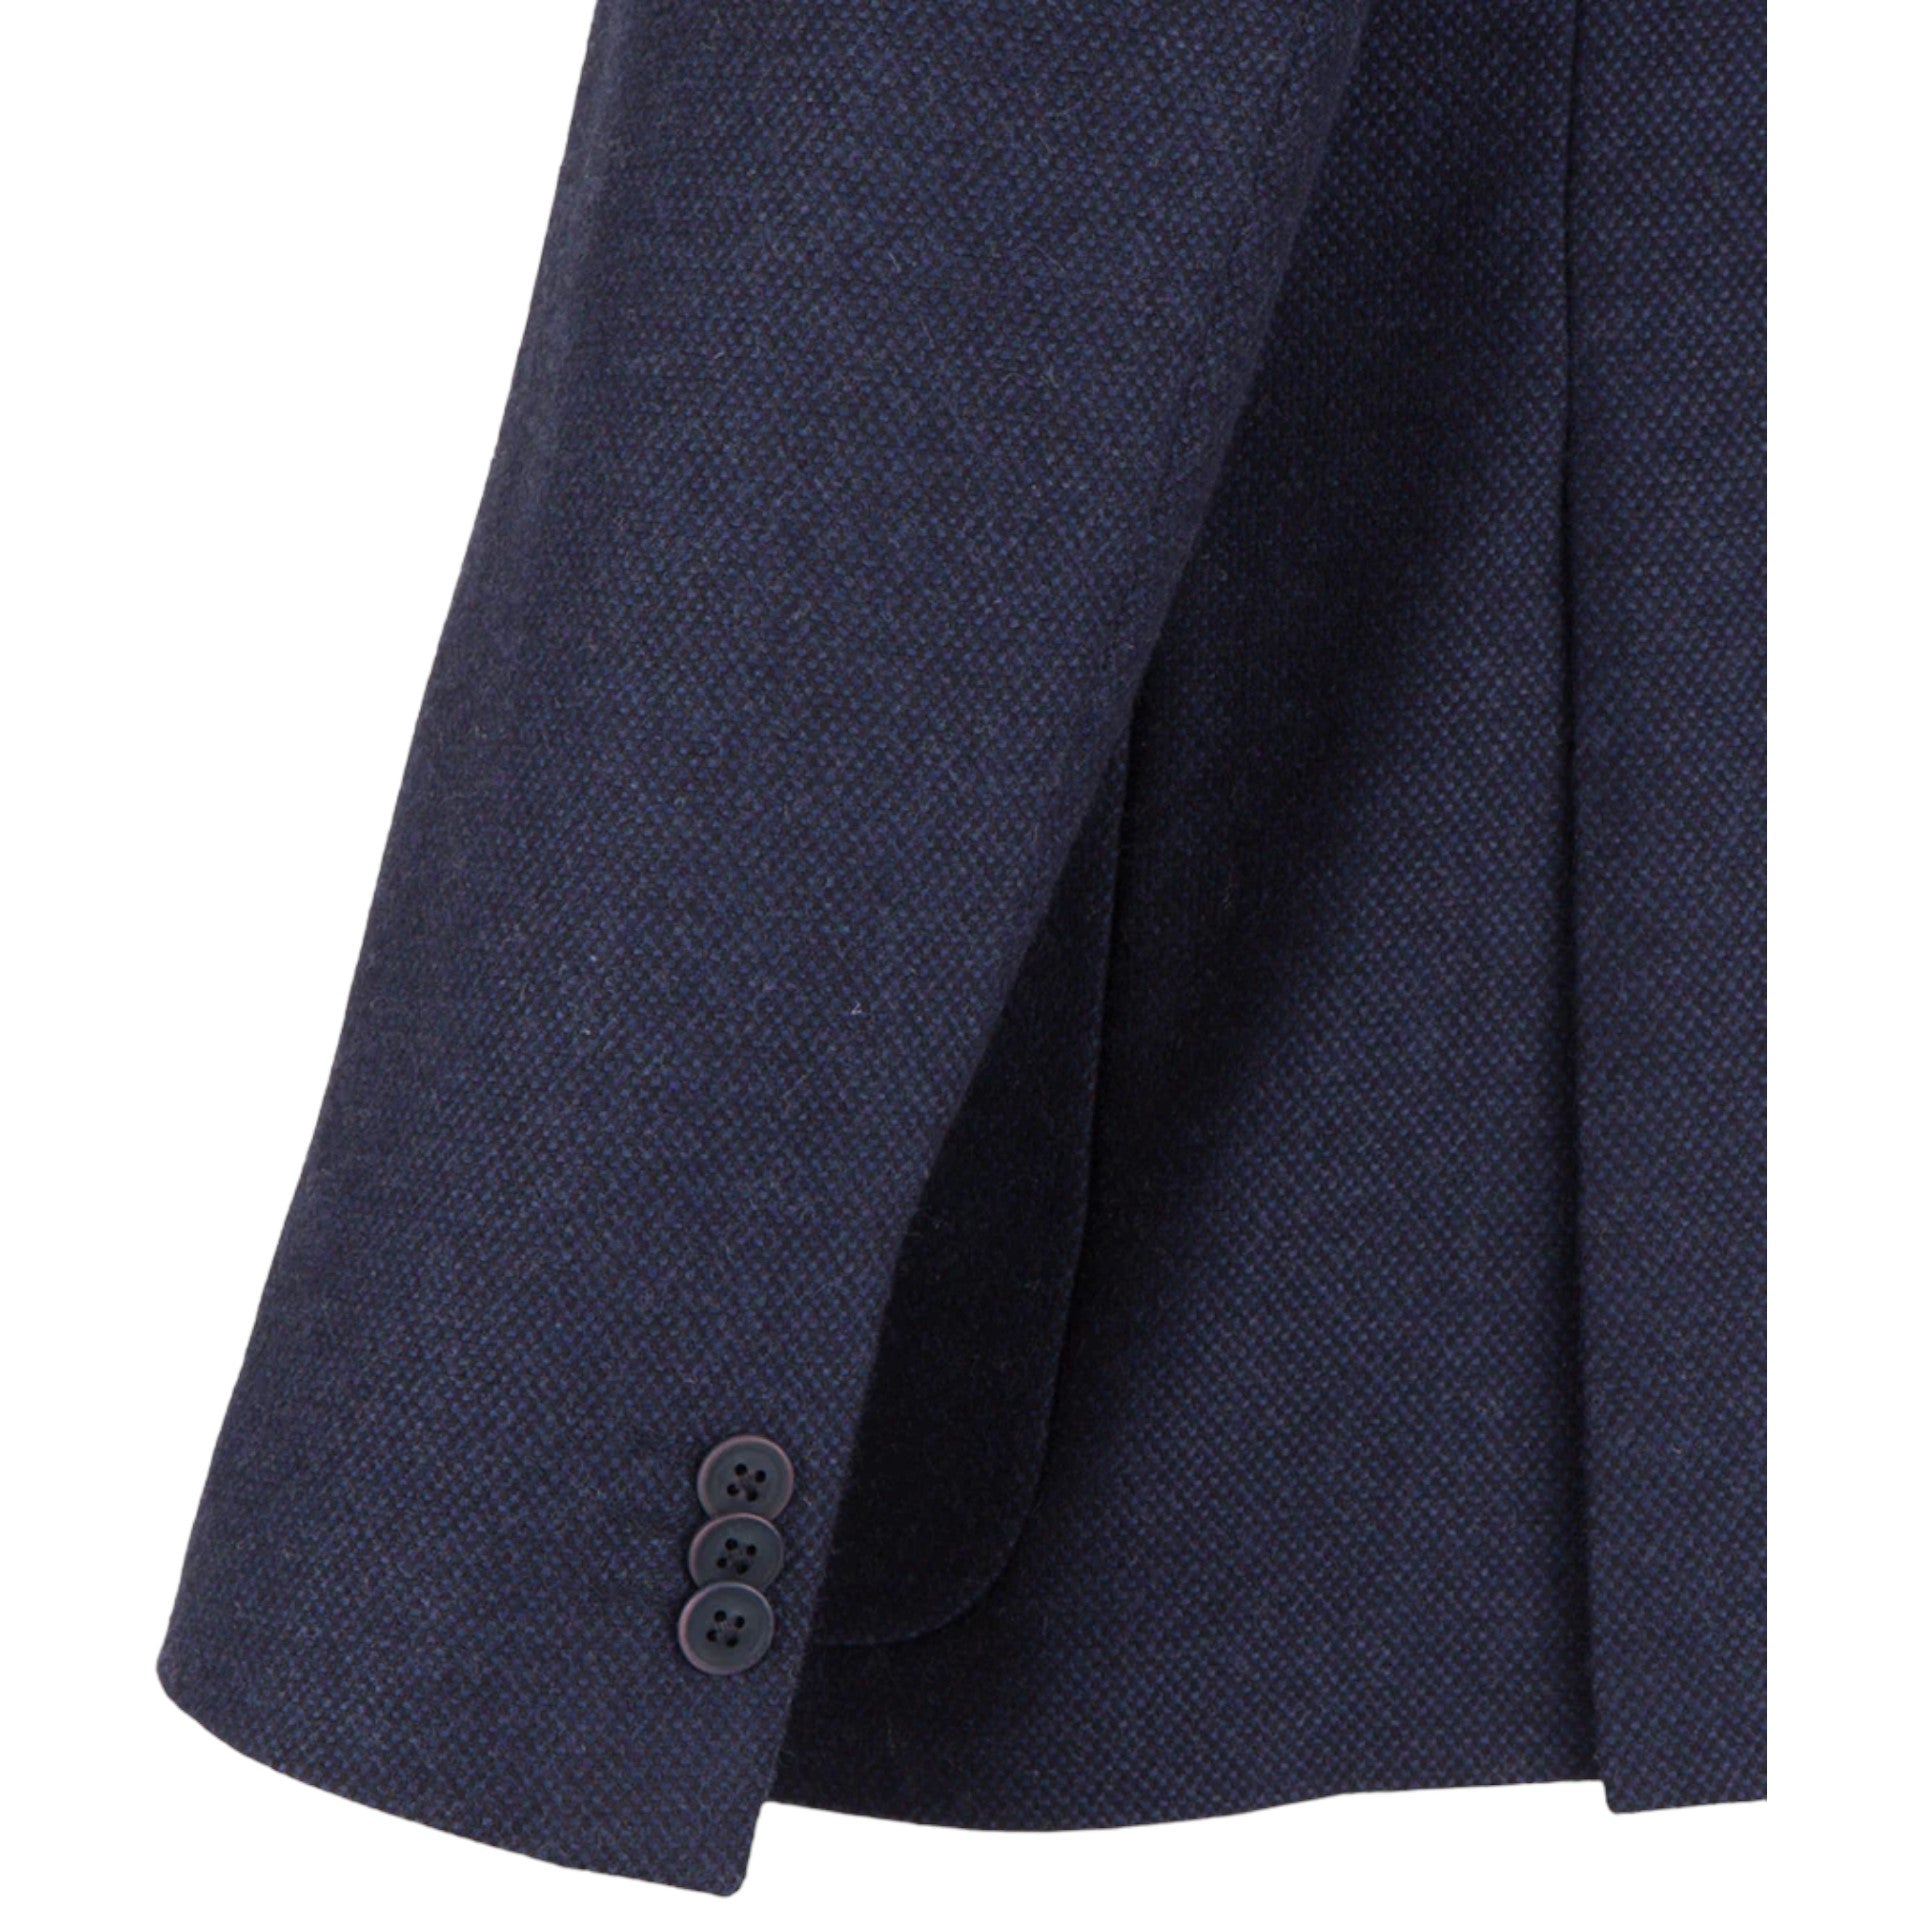 Guide London Brushed Tweed Navy Blazer with Gillet Insert (JK3501)